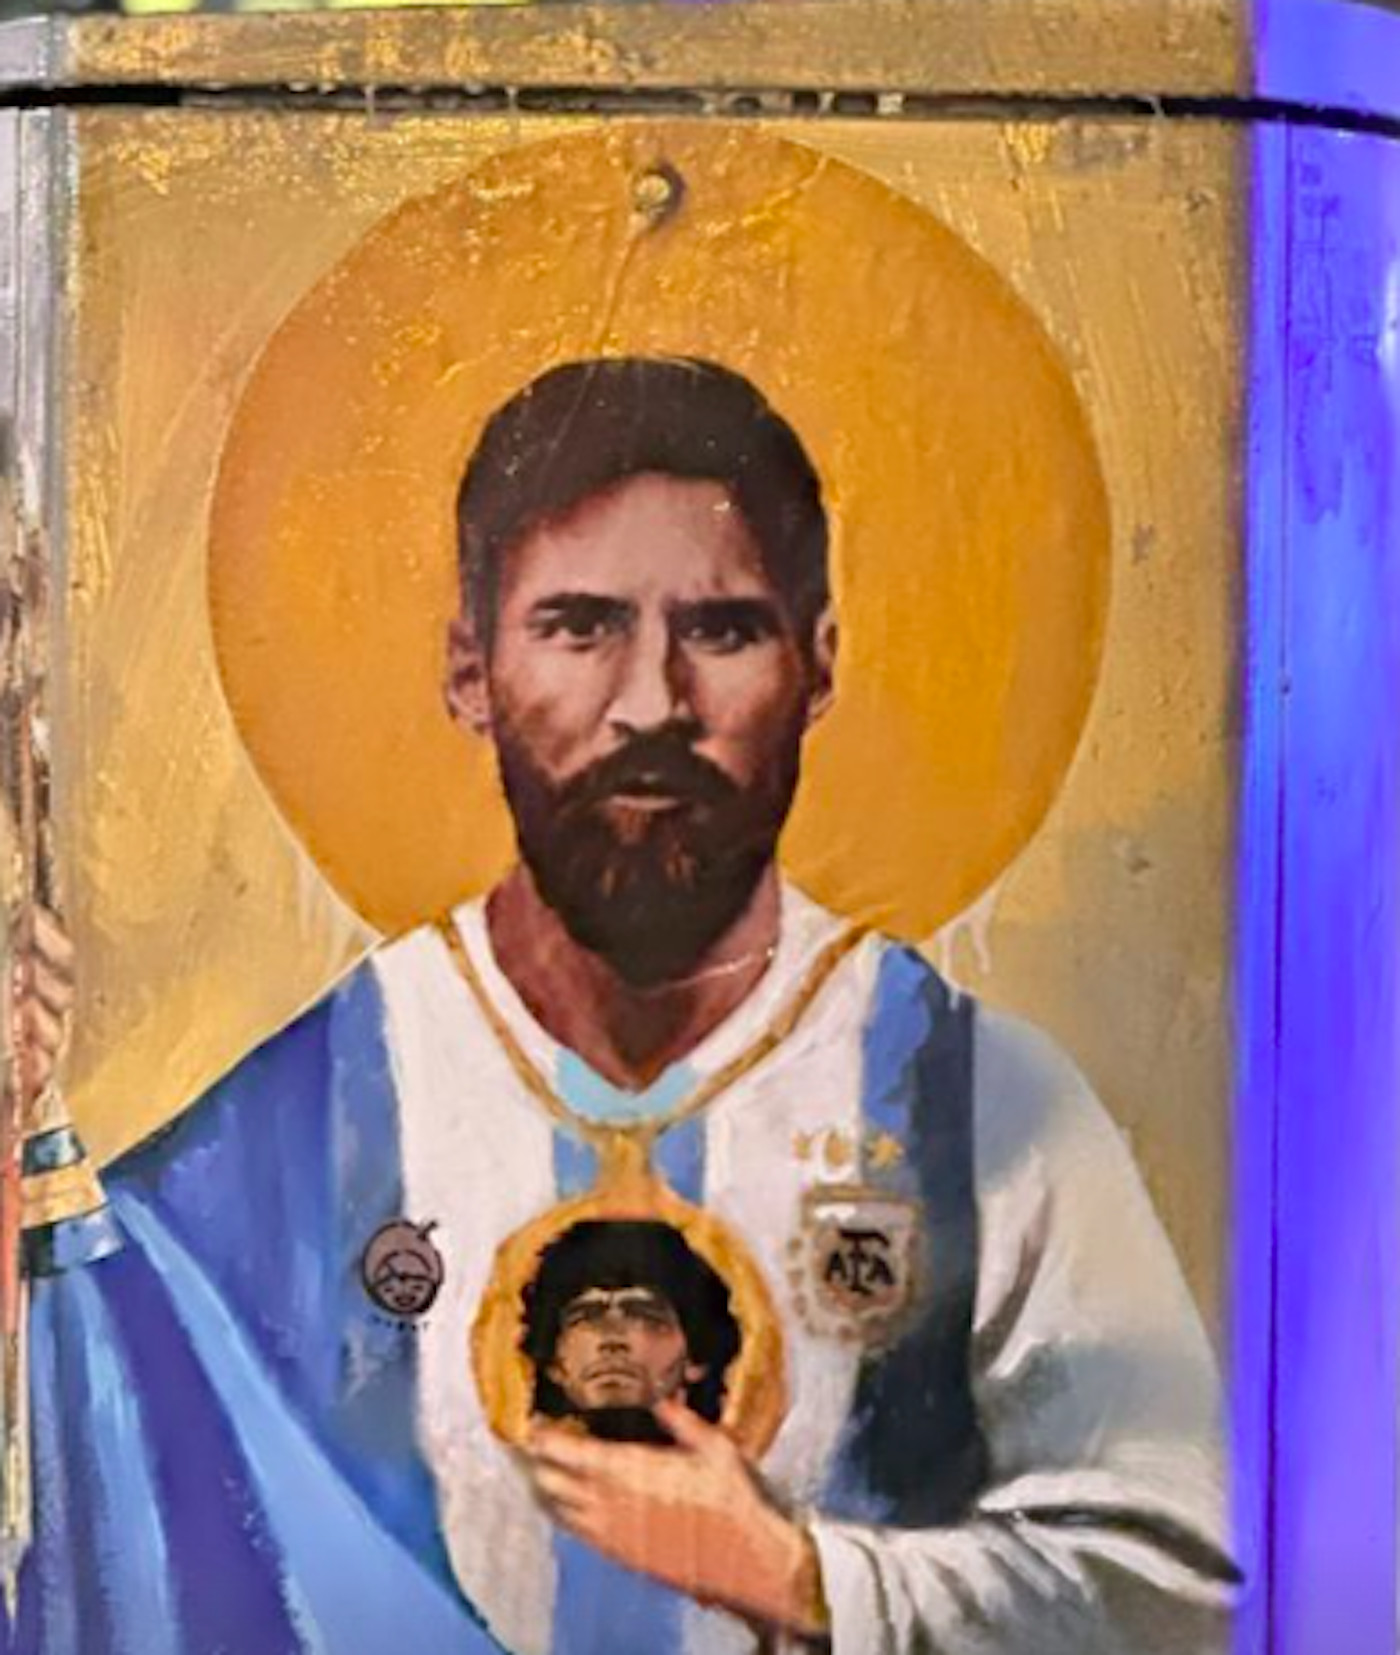 Mural de Messi con la copa del Mundo en la Diagonal / INSTAGRAM TVBOY